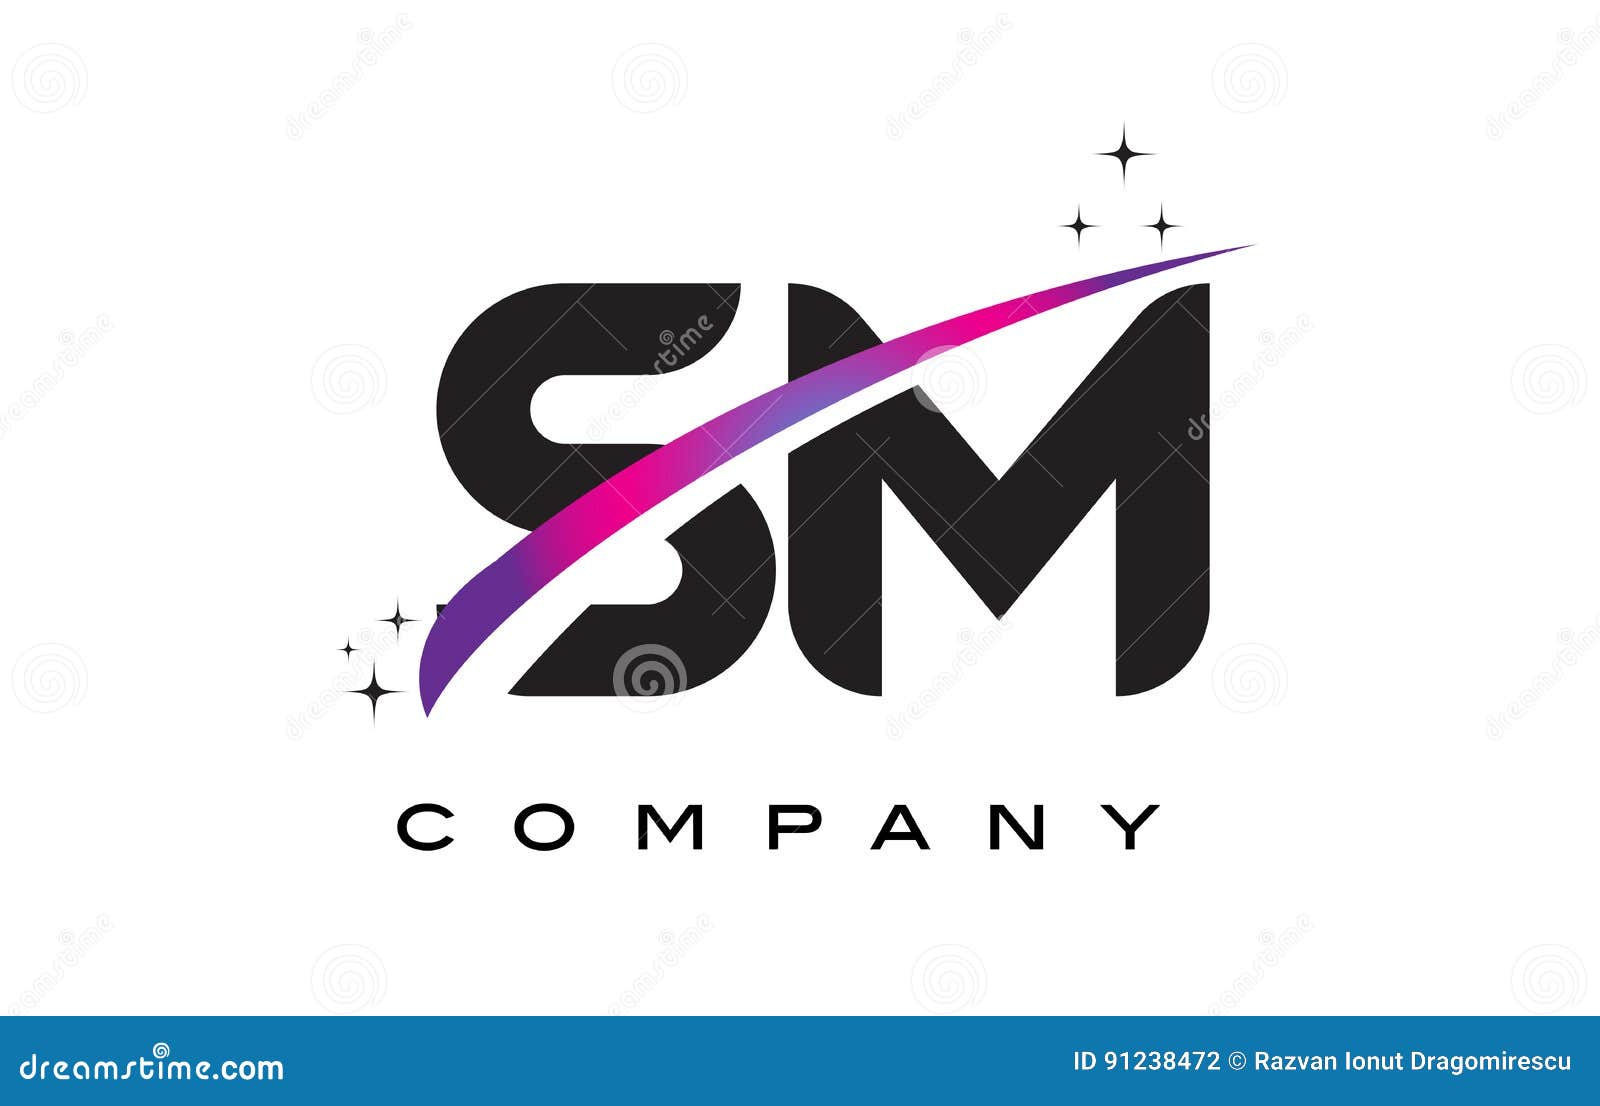 Sm Logo Ilustraciones Stock Vectores Y Clipart 165 Ilustraciones Stock